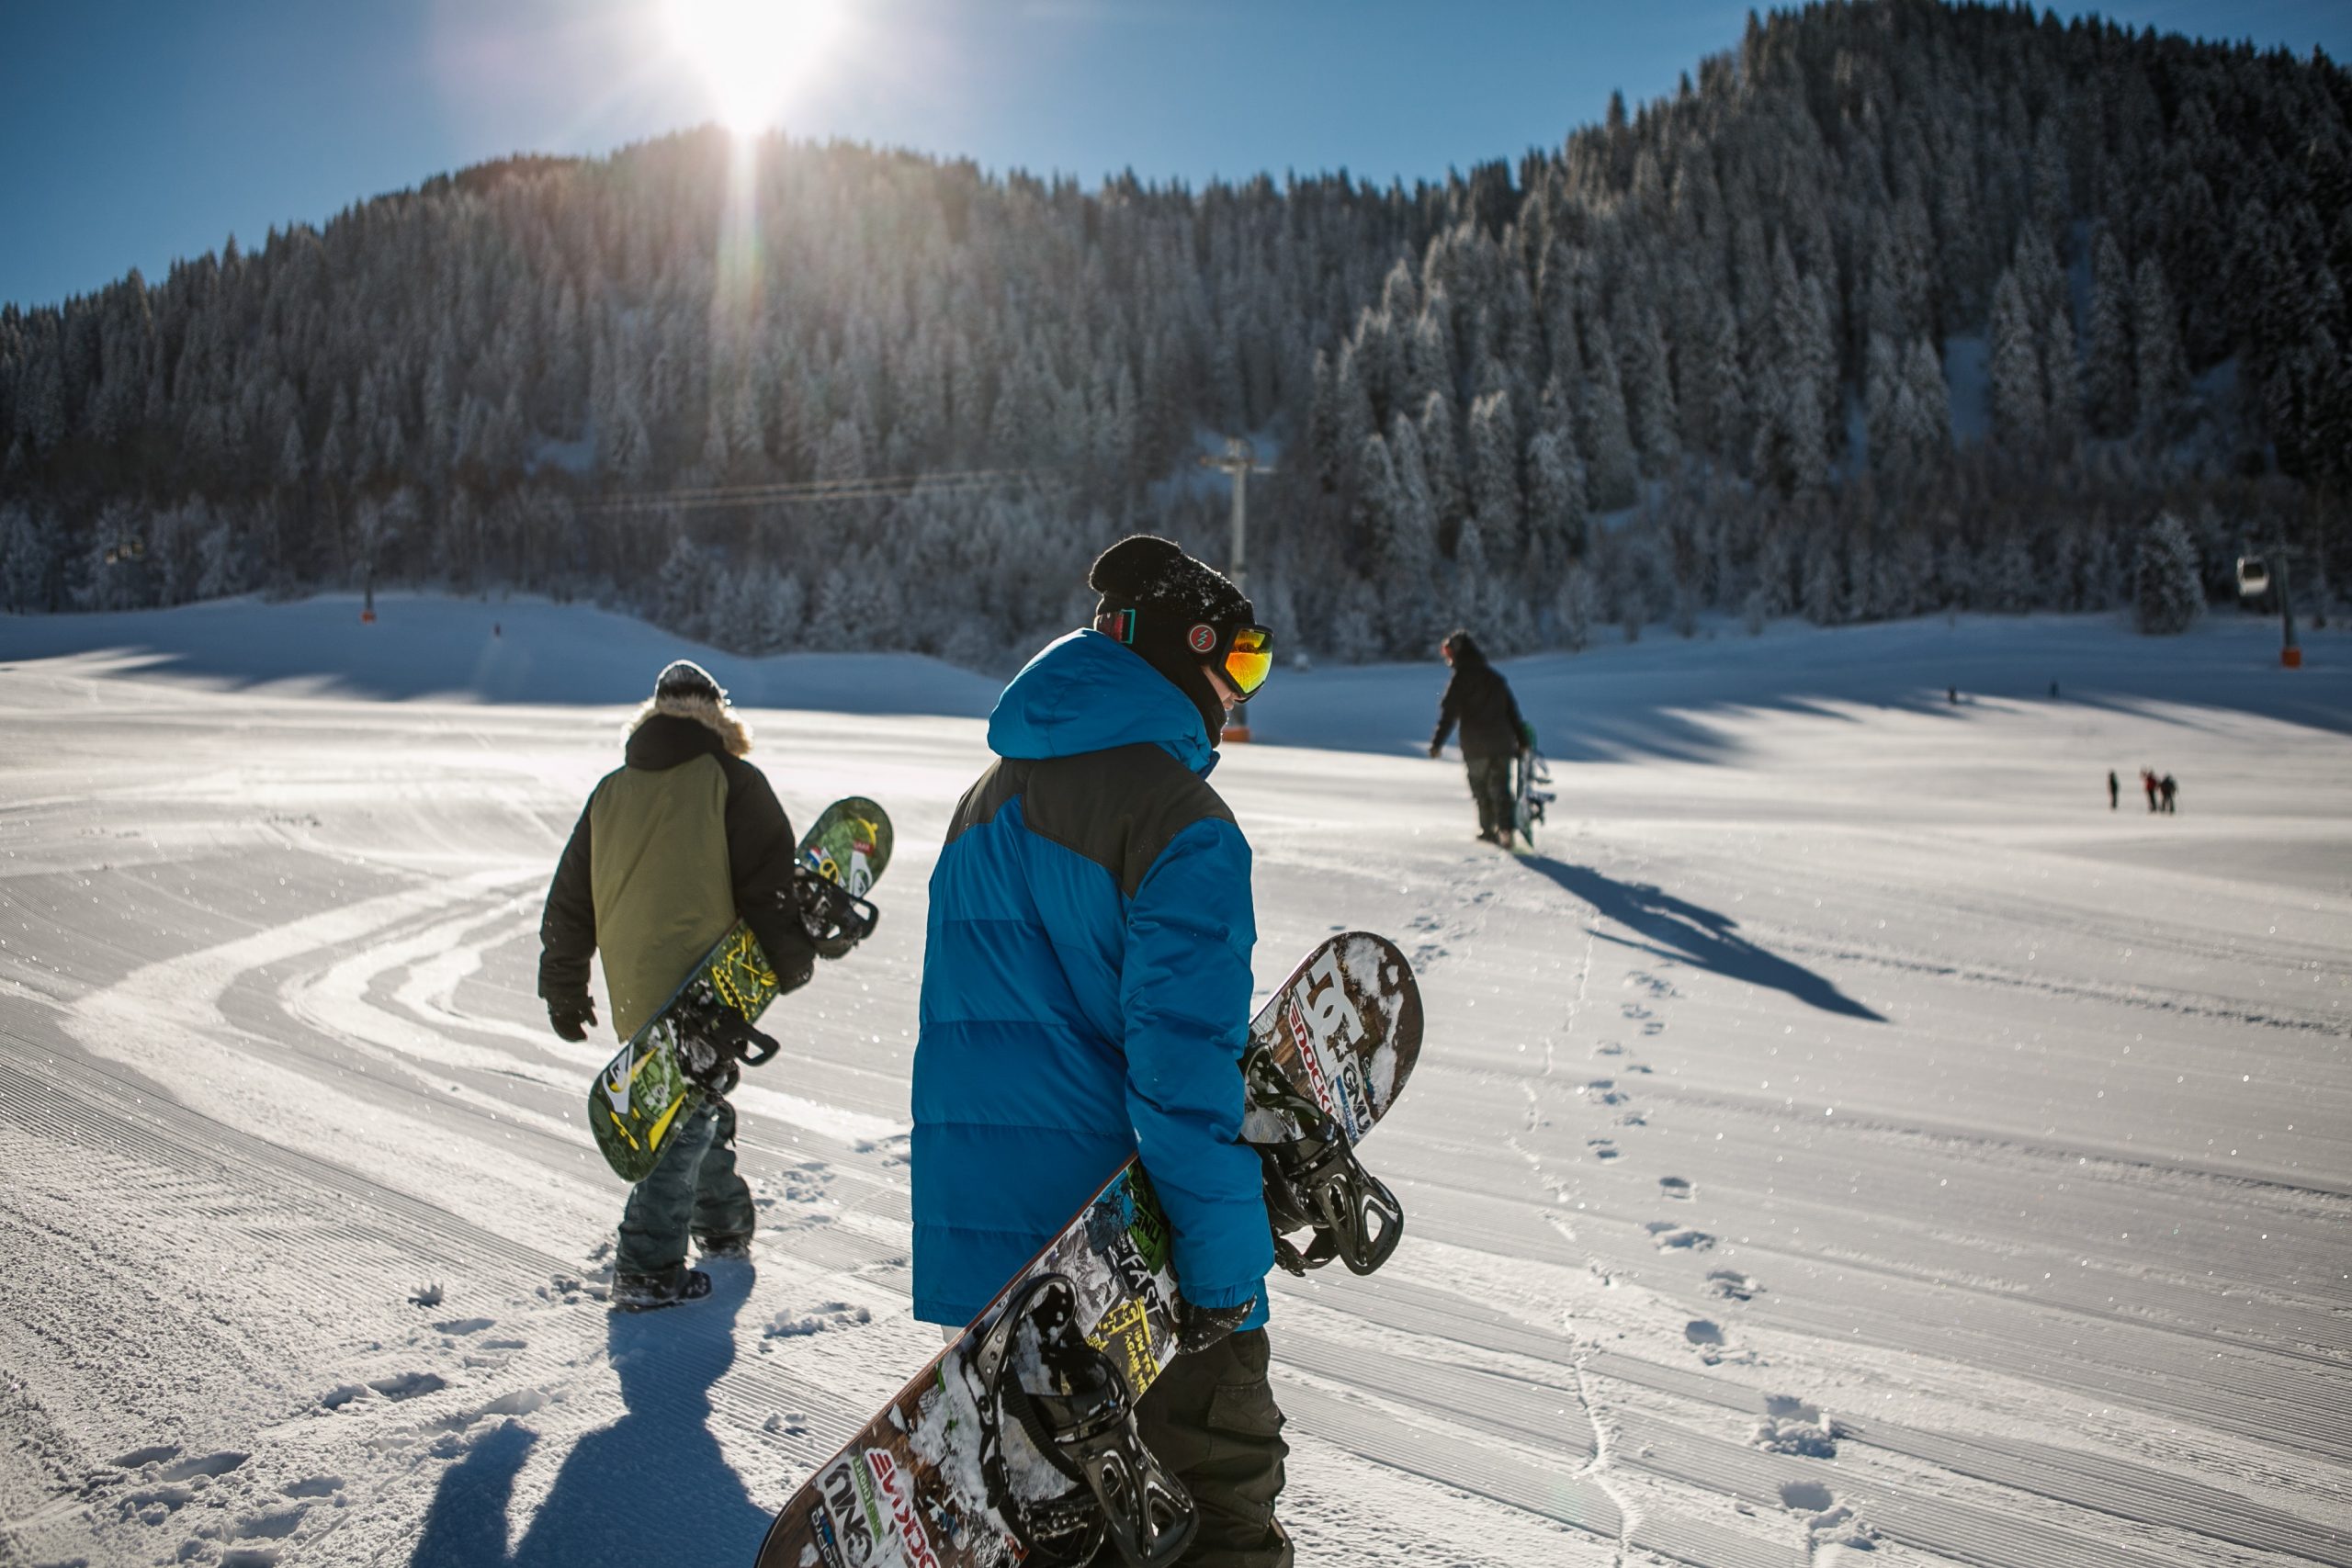 Ski e Snowboard na Áustria: Turismo de Esporte com muita neve!